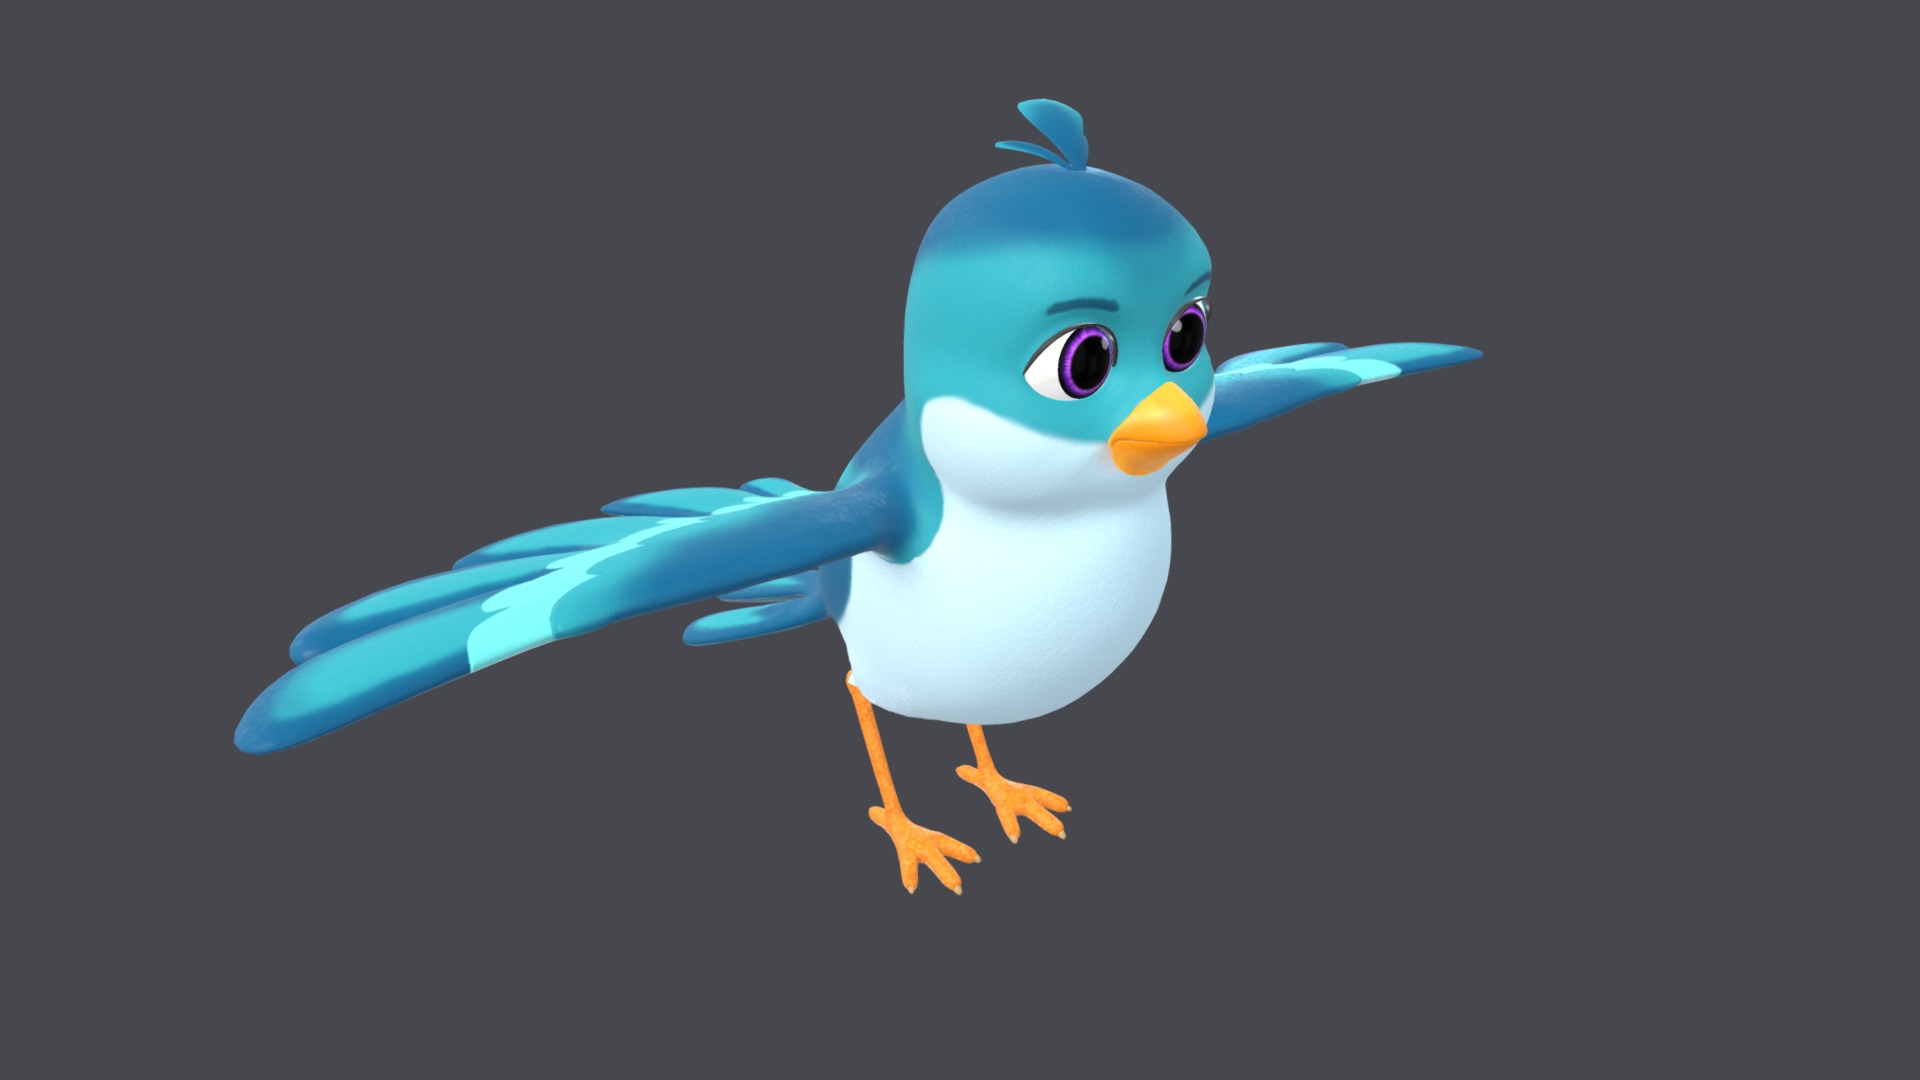 3D model Asset-Cartoons – Character – Sparrow – Rig – 3D - This is a 3D model of the Asset-Cartoons - Character - Sparrow - Rig - 3D. The 3D model is about a blue toy bird.